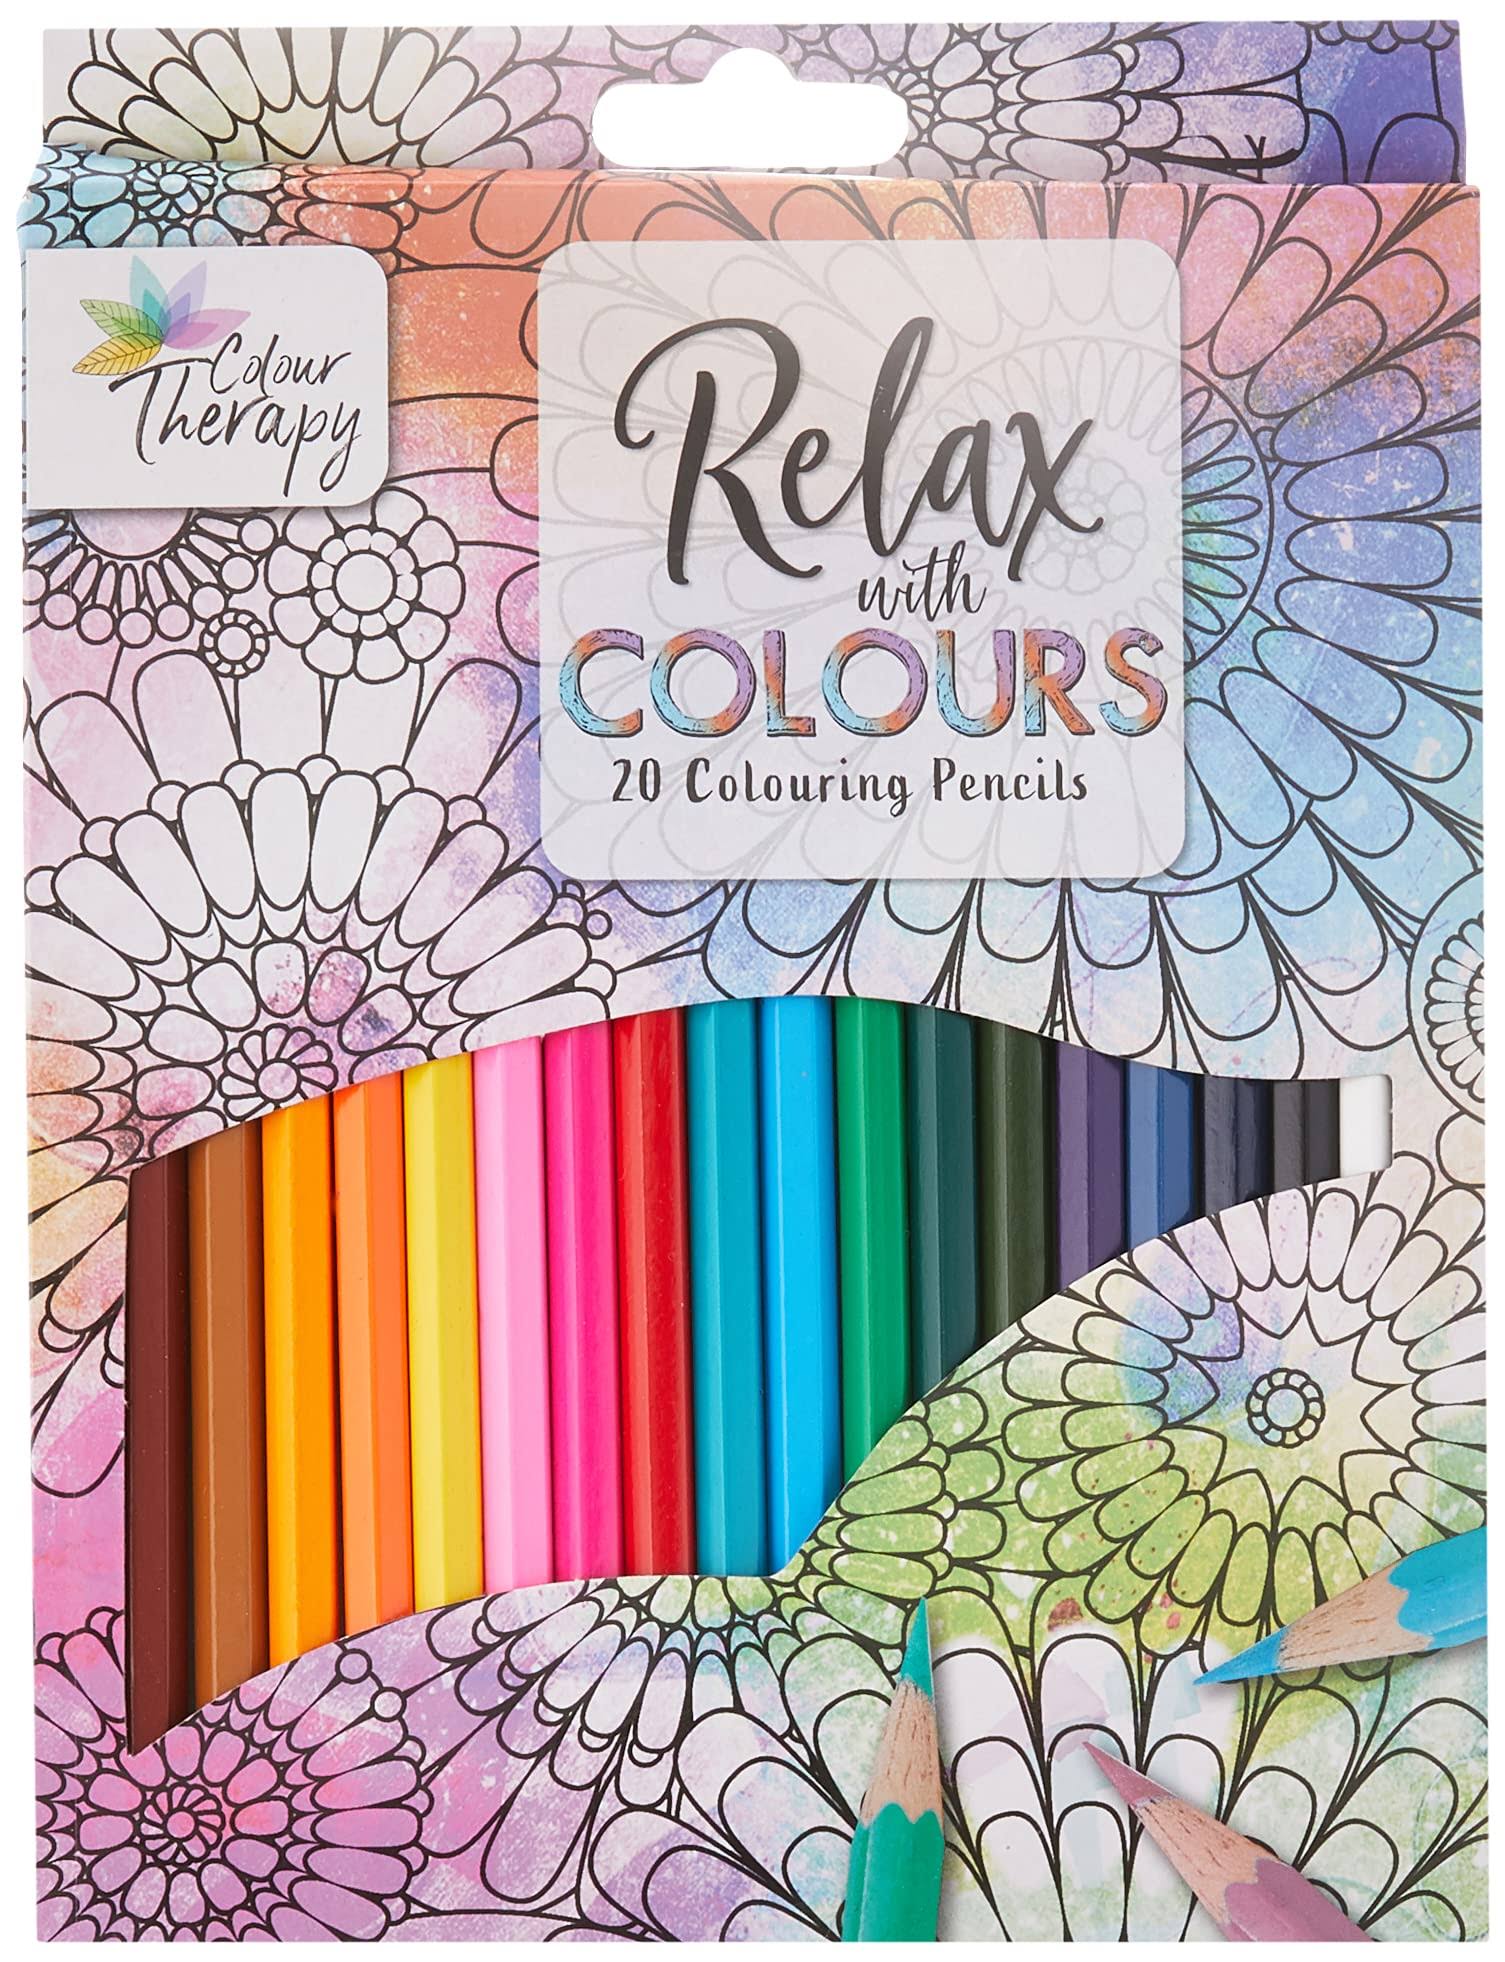 Colour Therapy Colouring Pencil